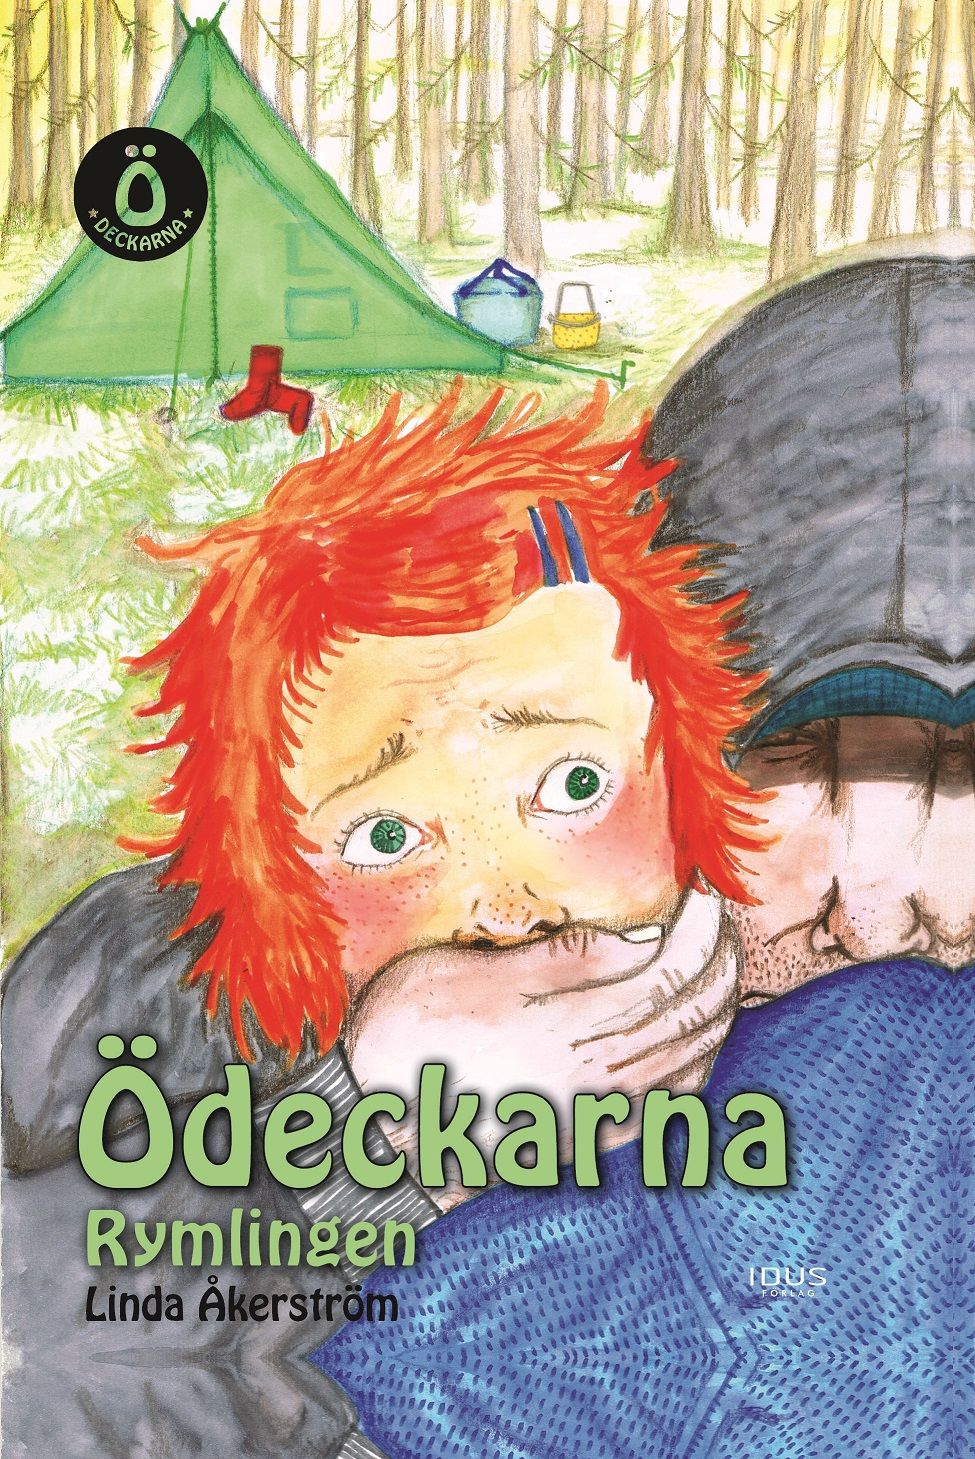 Ödeckarna - Rymlingen, eBook by Linda Åkerström